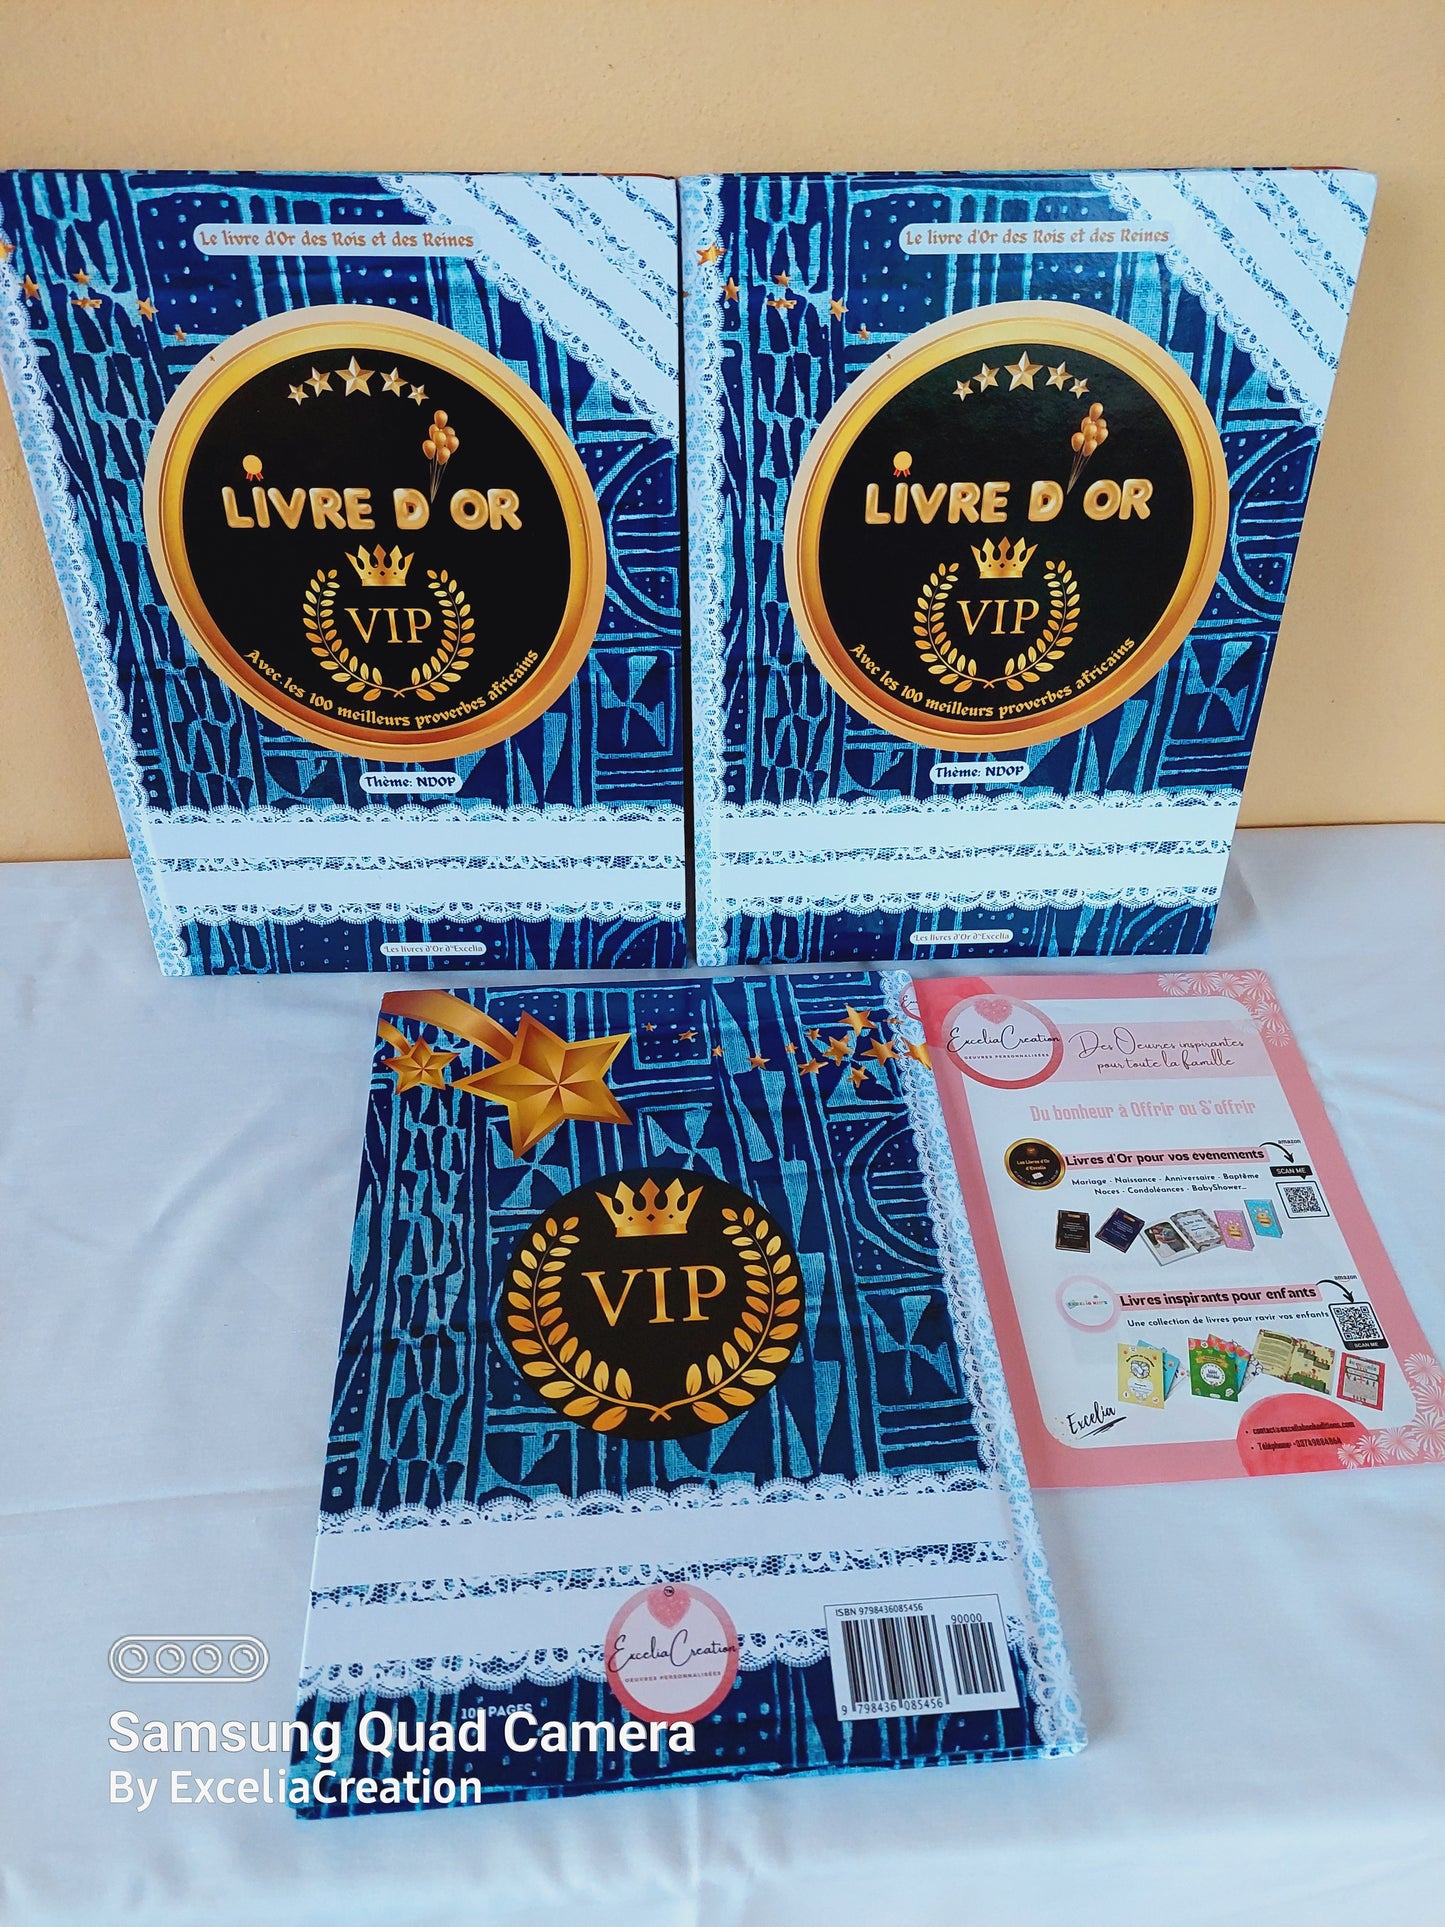 Le Grand Livre d'Or VIP des Rois et des Reines, avec les 100 meilleurs proverbes africains, Thème NDOP culture africaine bamiléké